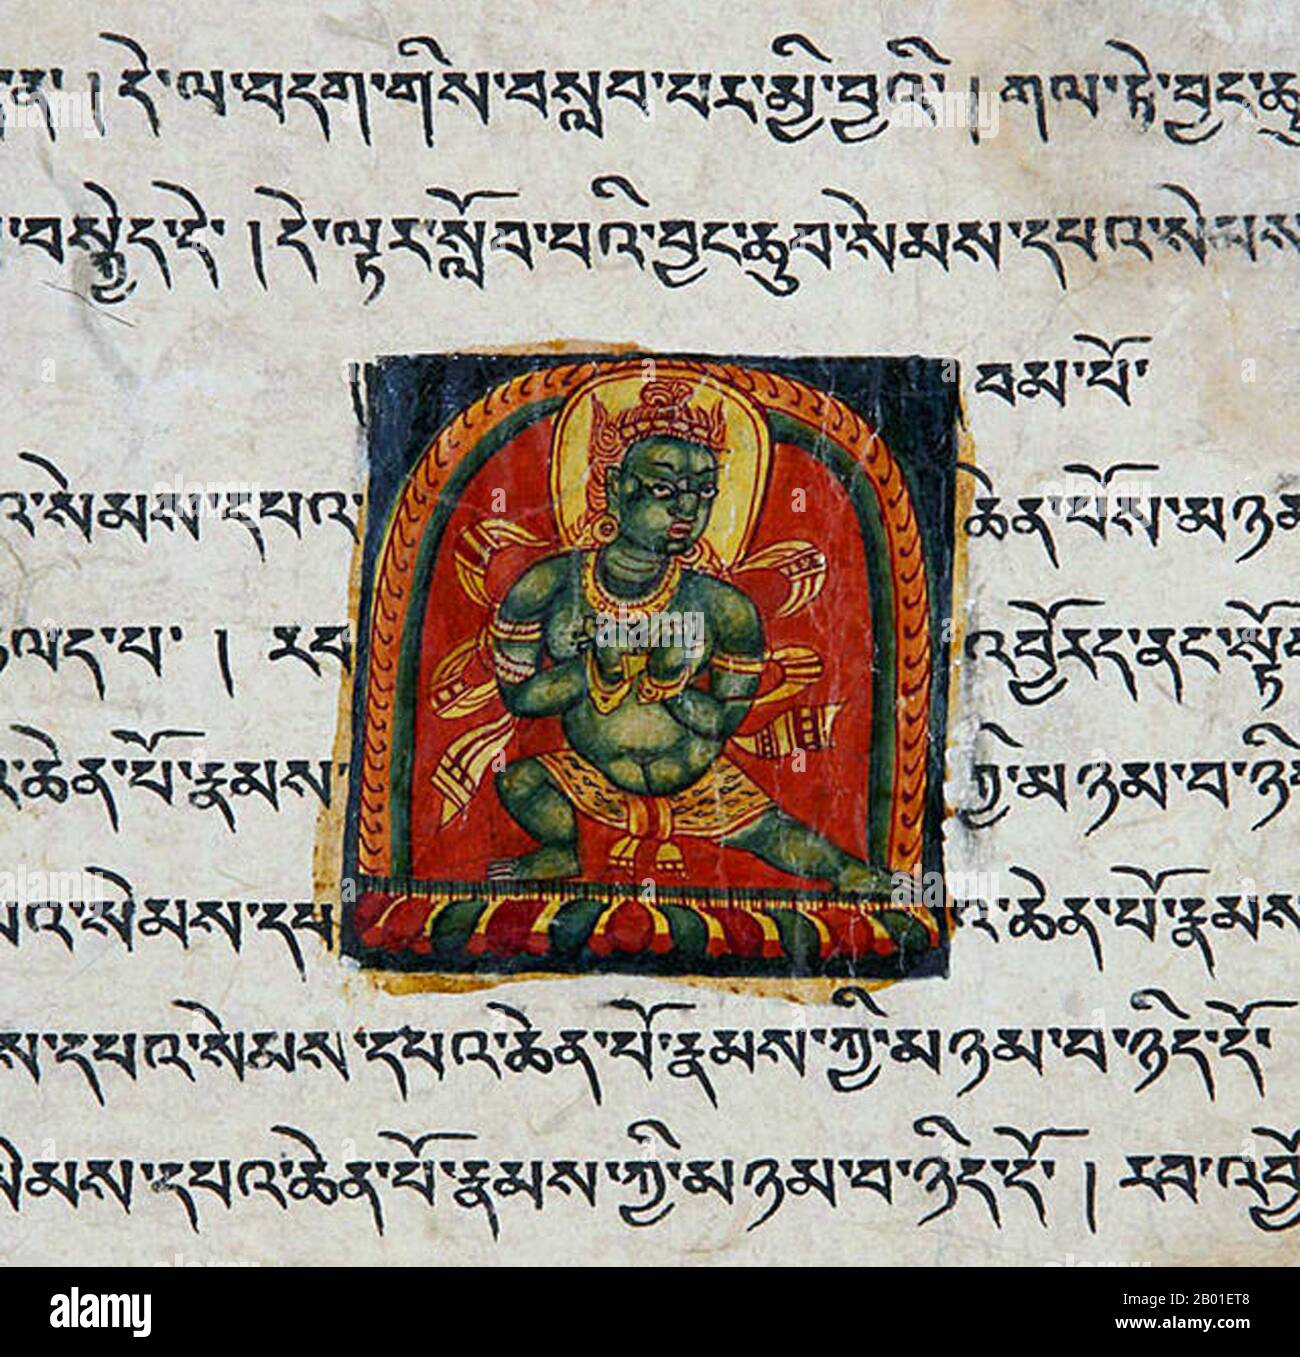 Chine/Tibet: Section d'un manuscrit illuminé, c. 12th-13th siècle. L'alphabet tibétain est un abugida d'origine indique utilisé pour écrire la langue tibétaine ainsi que la langue Dzongkha, Denzongkha, ladakhi et parfois la langue Balti. La forme imprimée de l'alphabet est appelée uchen script (Tibétain: དབུ་ཅན་; Wylie: dbu-CAN; 'avec une tête') tandis que la forme cursive écrite à la main utilisée dans l'écriture quotidienne est appelée umê (Tibétain: དབུ་མེད་; Wylie: dbu-med; 'headless'). L'alphabet est très étroitement lié à une large identité ethnique tibétaine. Banque D'Images